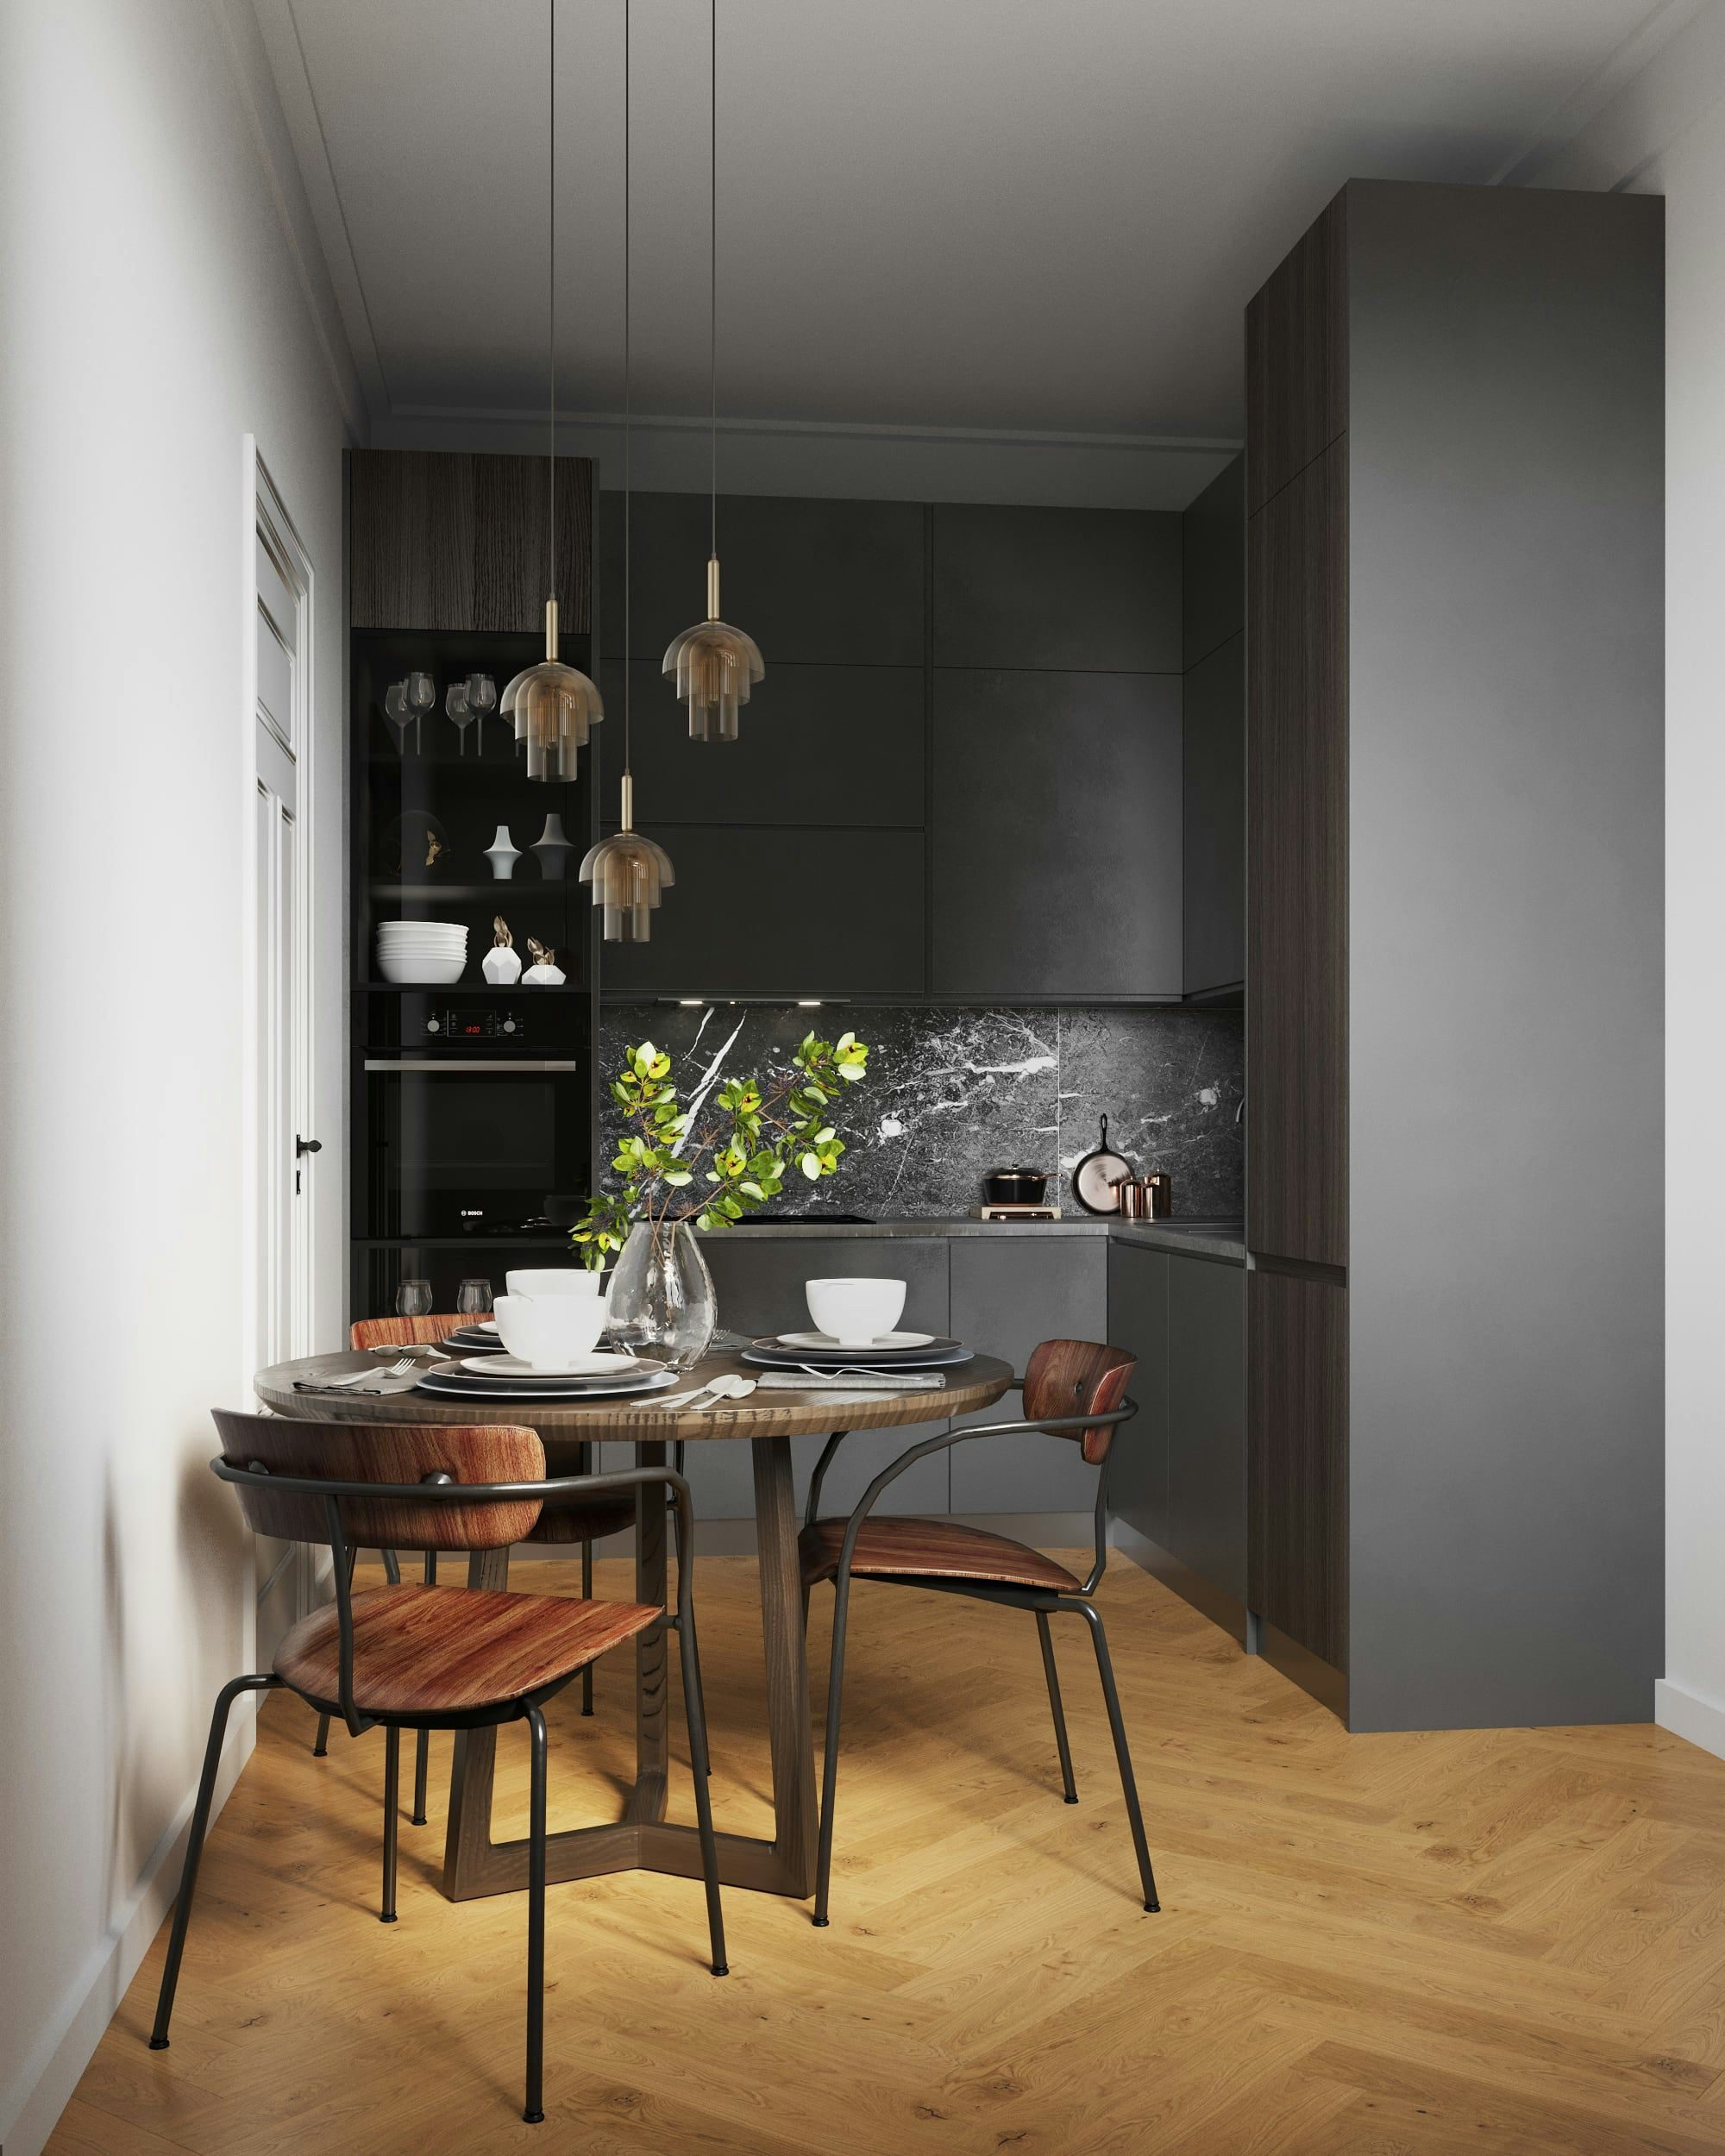 3D Architekturvisualisierung einer Küche mit Essbereich in einer kleinen Wohnung in der Hindenburgstraße Erlangen, Deutschland